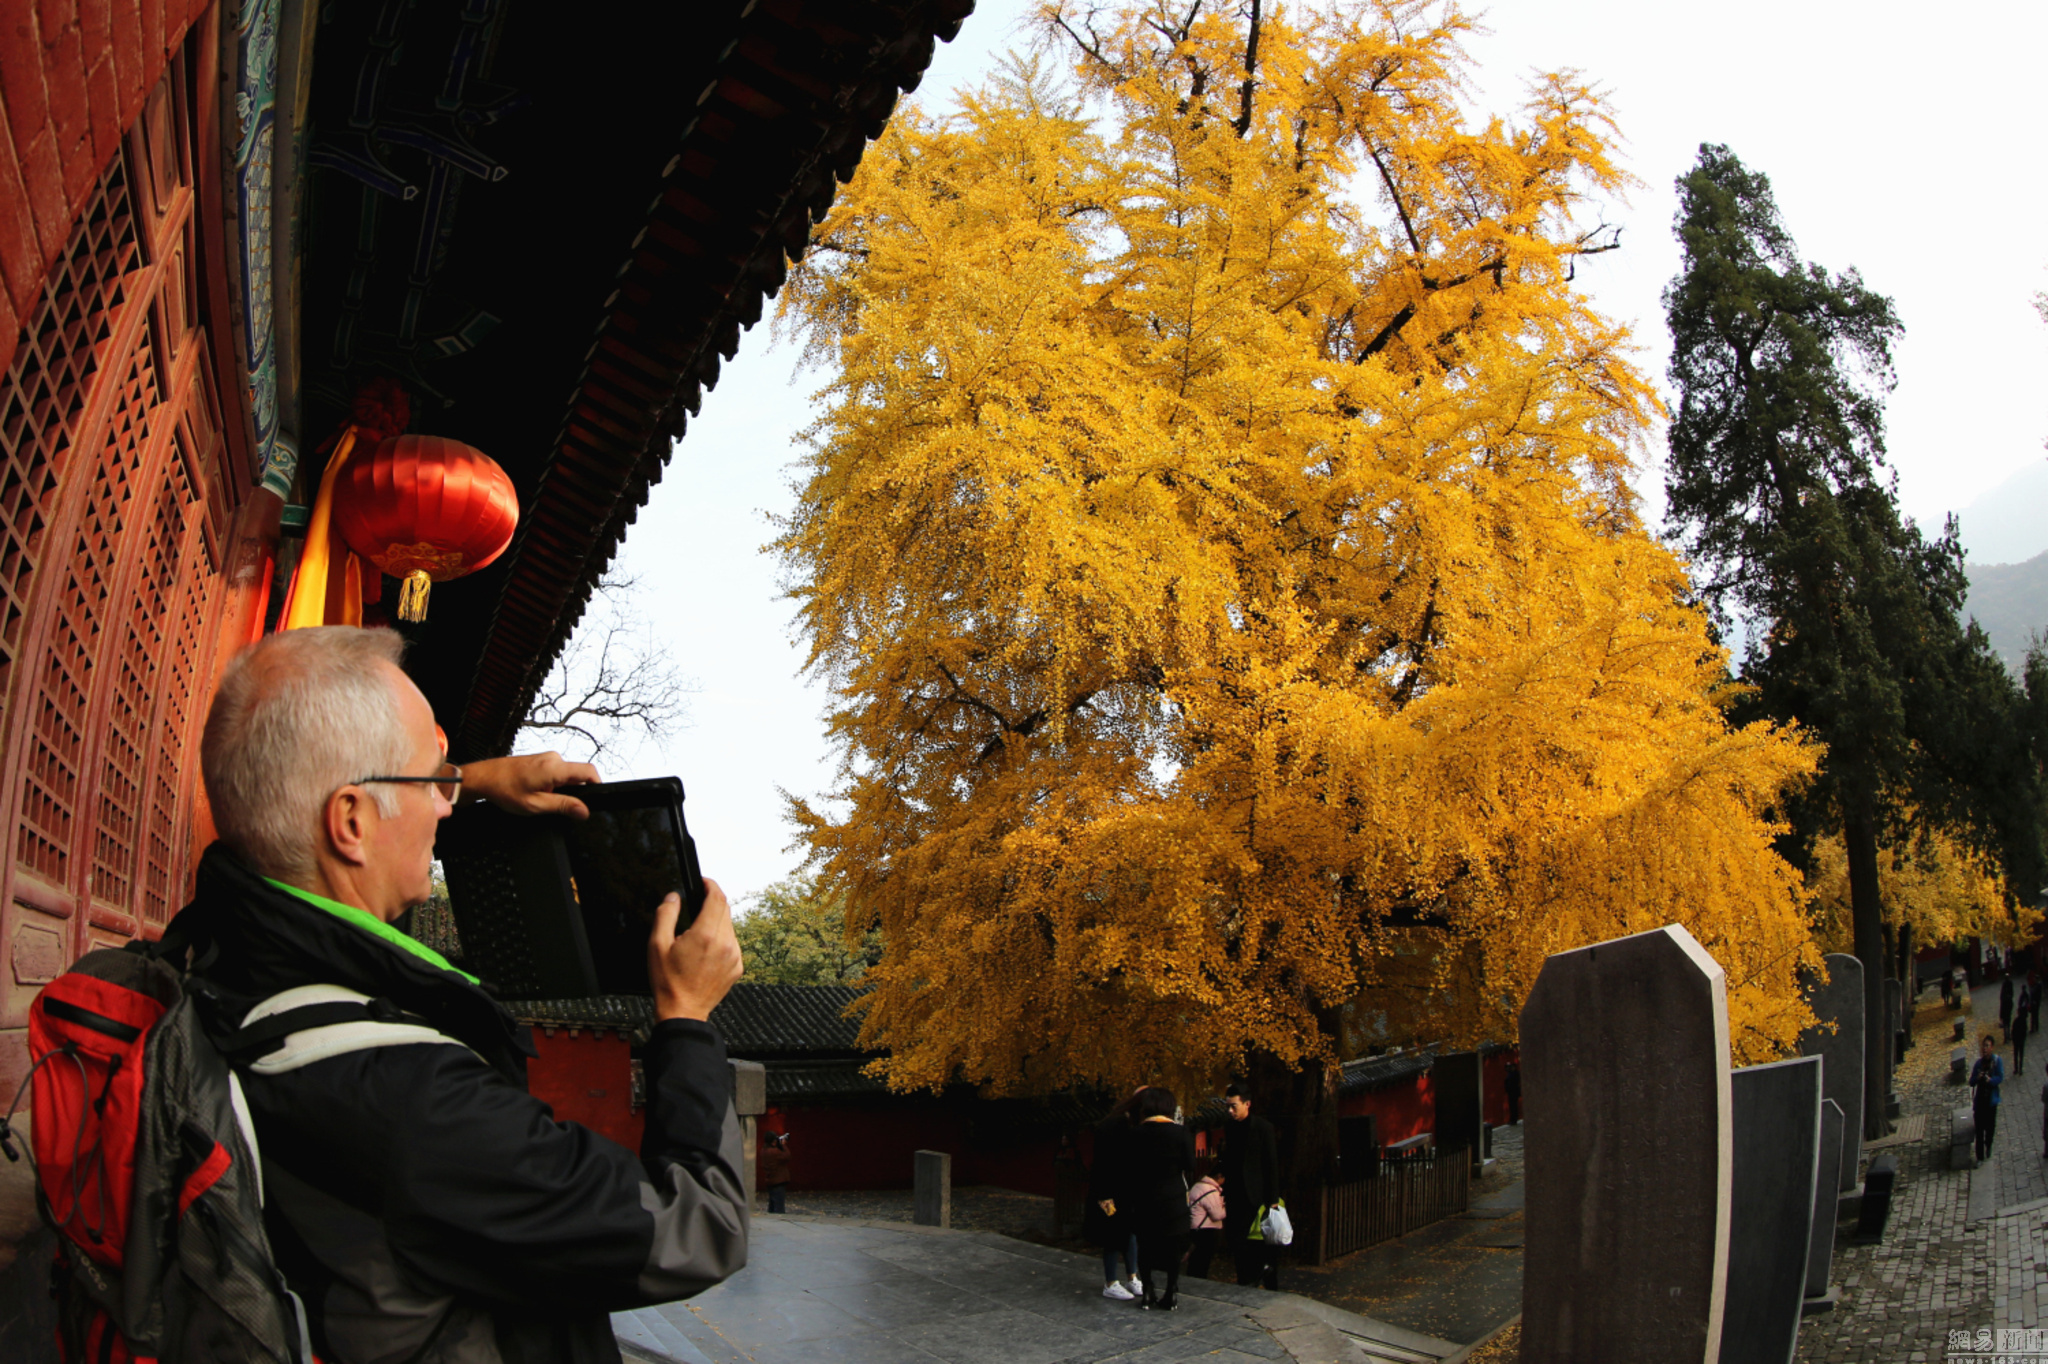 少林寺千年银杏一片金黄 已有1500年历史